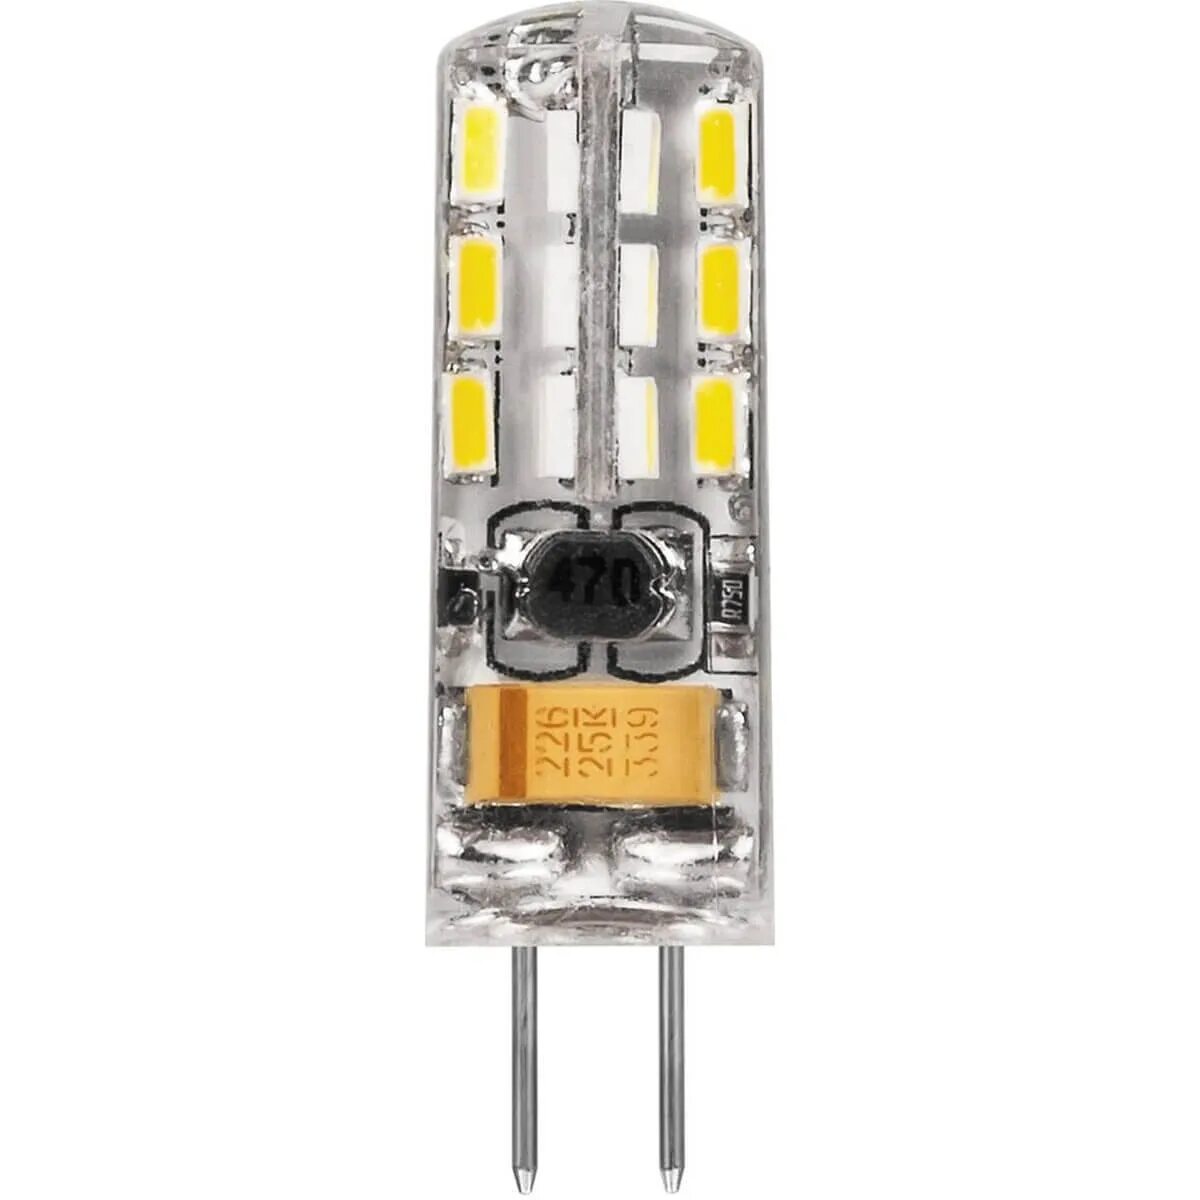 Лампа светодиодная led 2вт 12в g4 белый капсульная (lb-420). Лампа led g4 2w (12v) 4000k lb-420 Feron. Лампа светодиодная led 3вт 12в g4 теплый капсульная (lb-422 48led). Лампа светодиодная Feron lb-420 25858, g4, JC, 2вт.